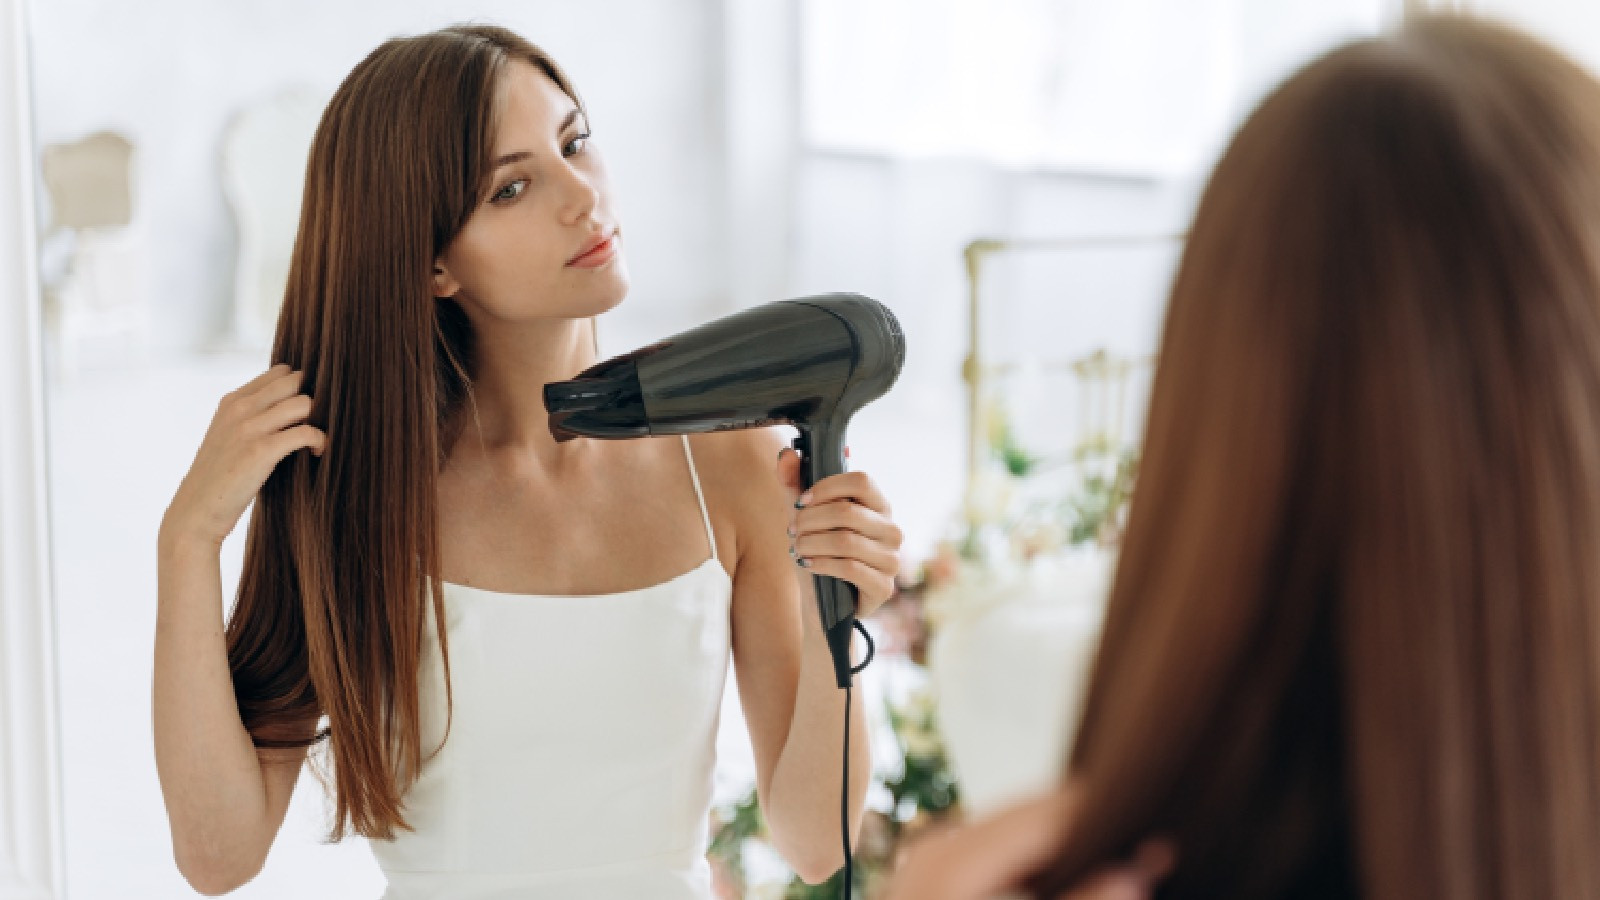 Saç kurutma makinası kullanırken önemli püf noktalarına dikkat ederek saçlarınızı daha sağlıklı ve güzel bir şekilde kurutabilirsiniz.